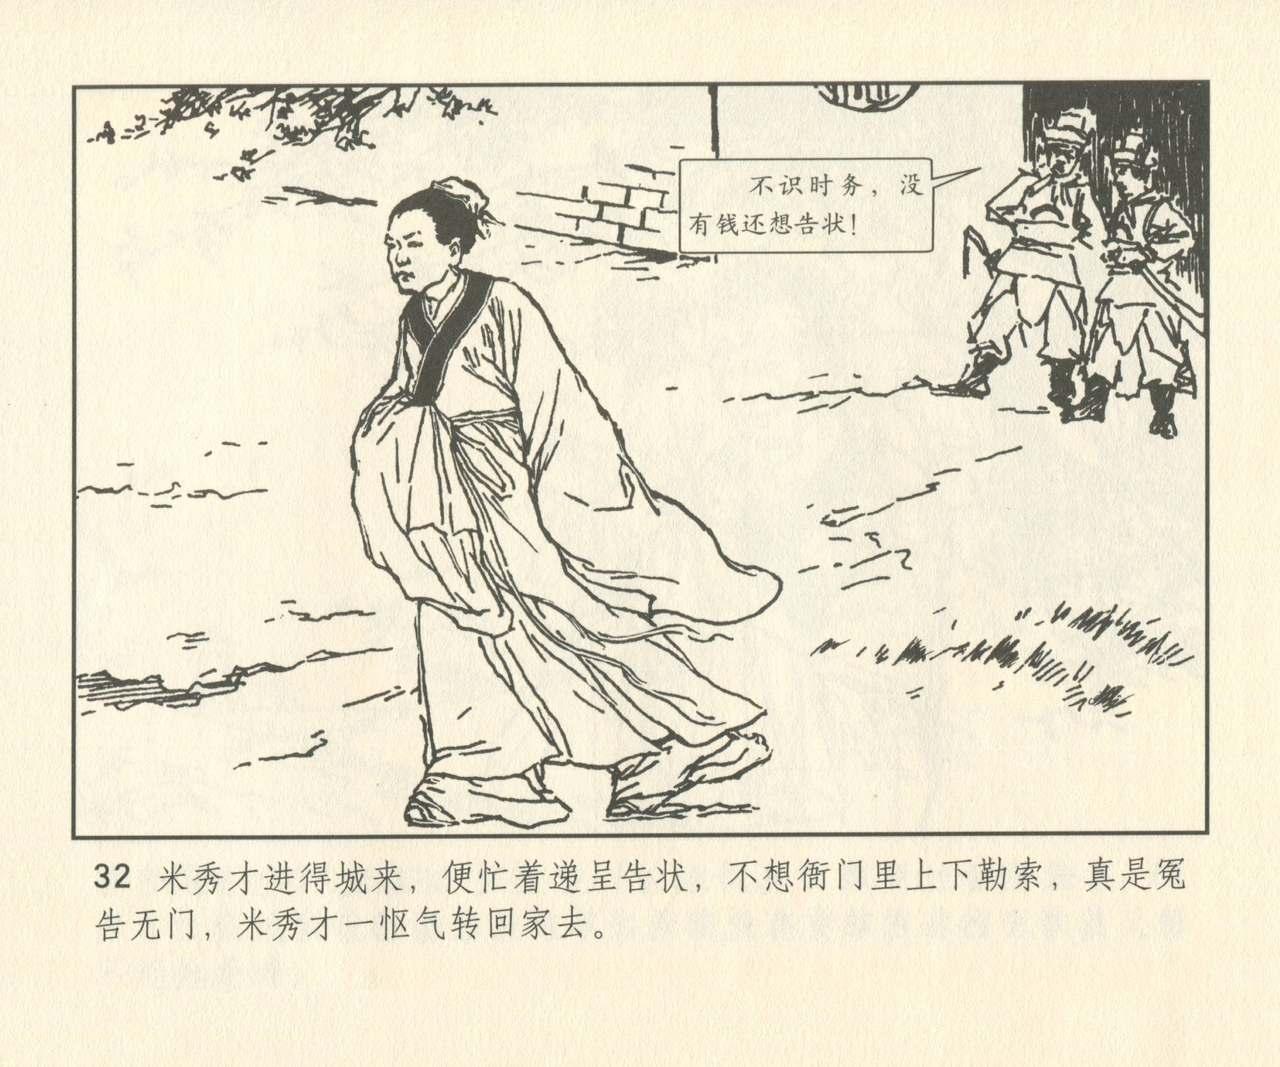 聊斋志异 张玮等绘 天津人民美术出版社 卷二十一 ~ 三十 160